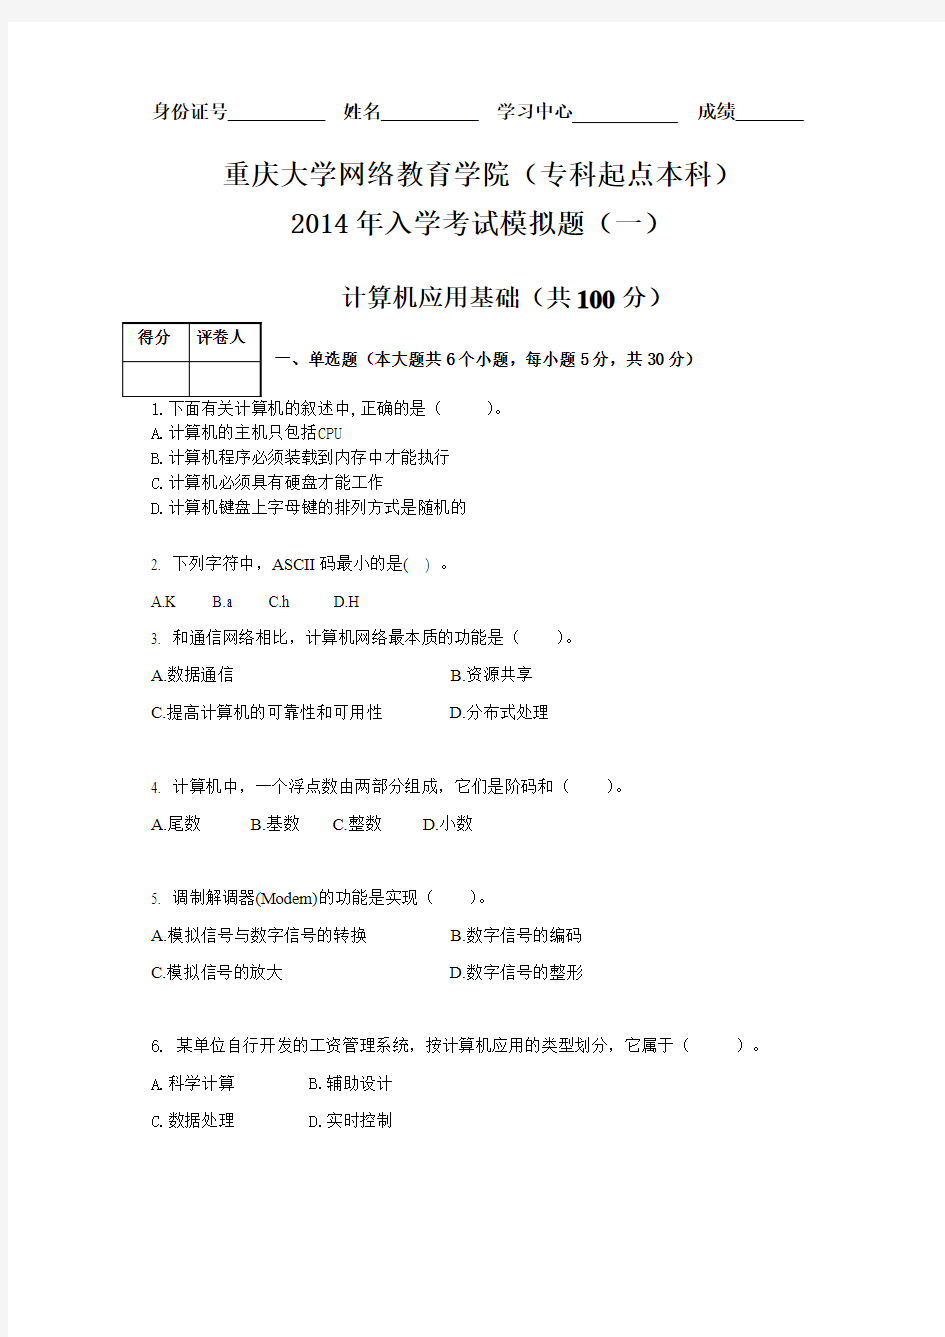 重庆大学网络教育学院(高中起点专科)2014年入学考试模拟题(一)计算机应用基础